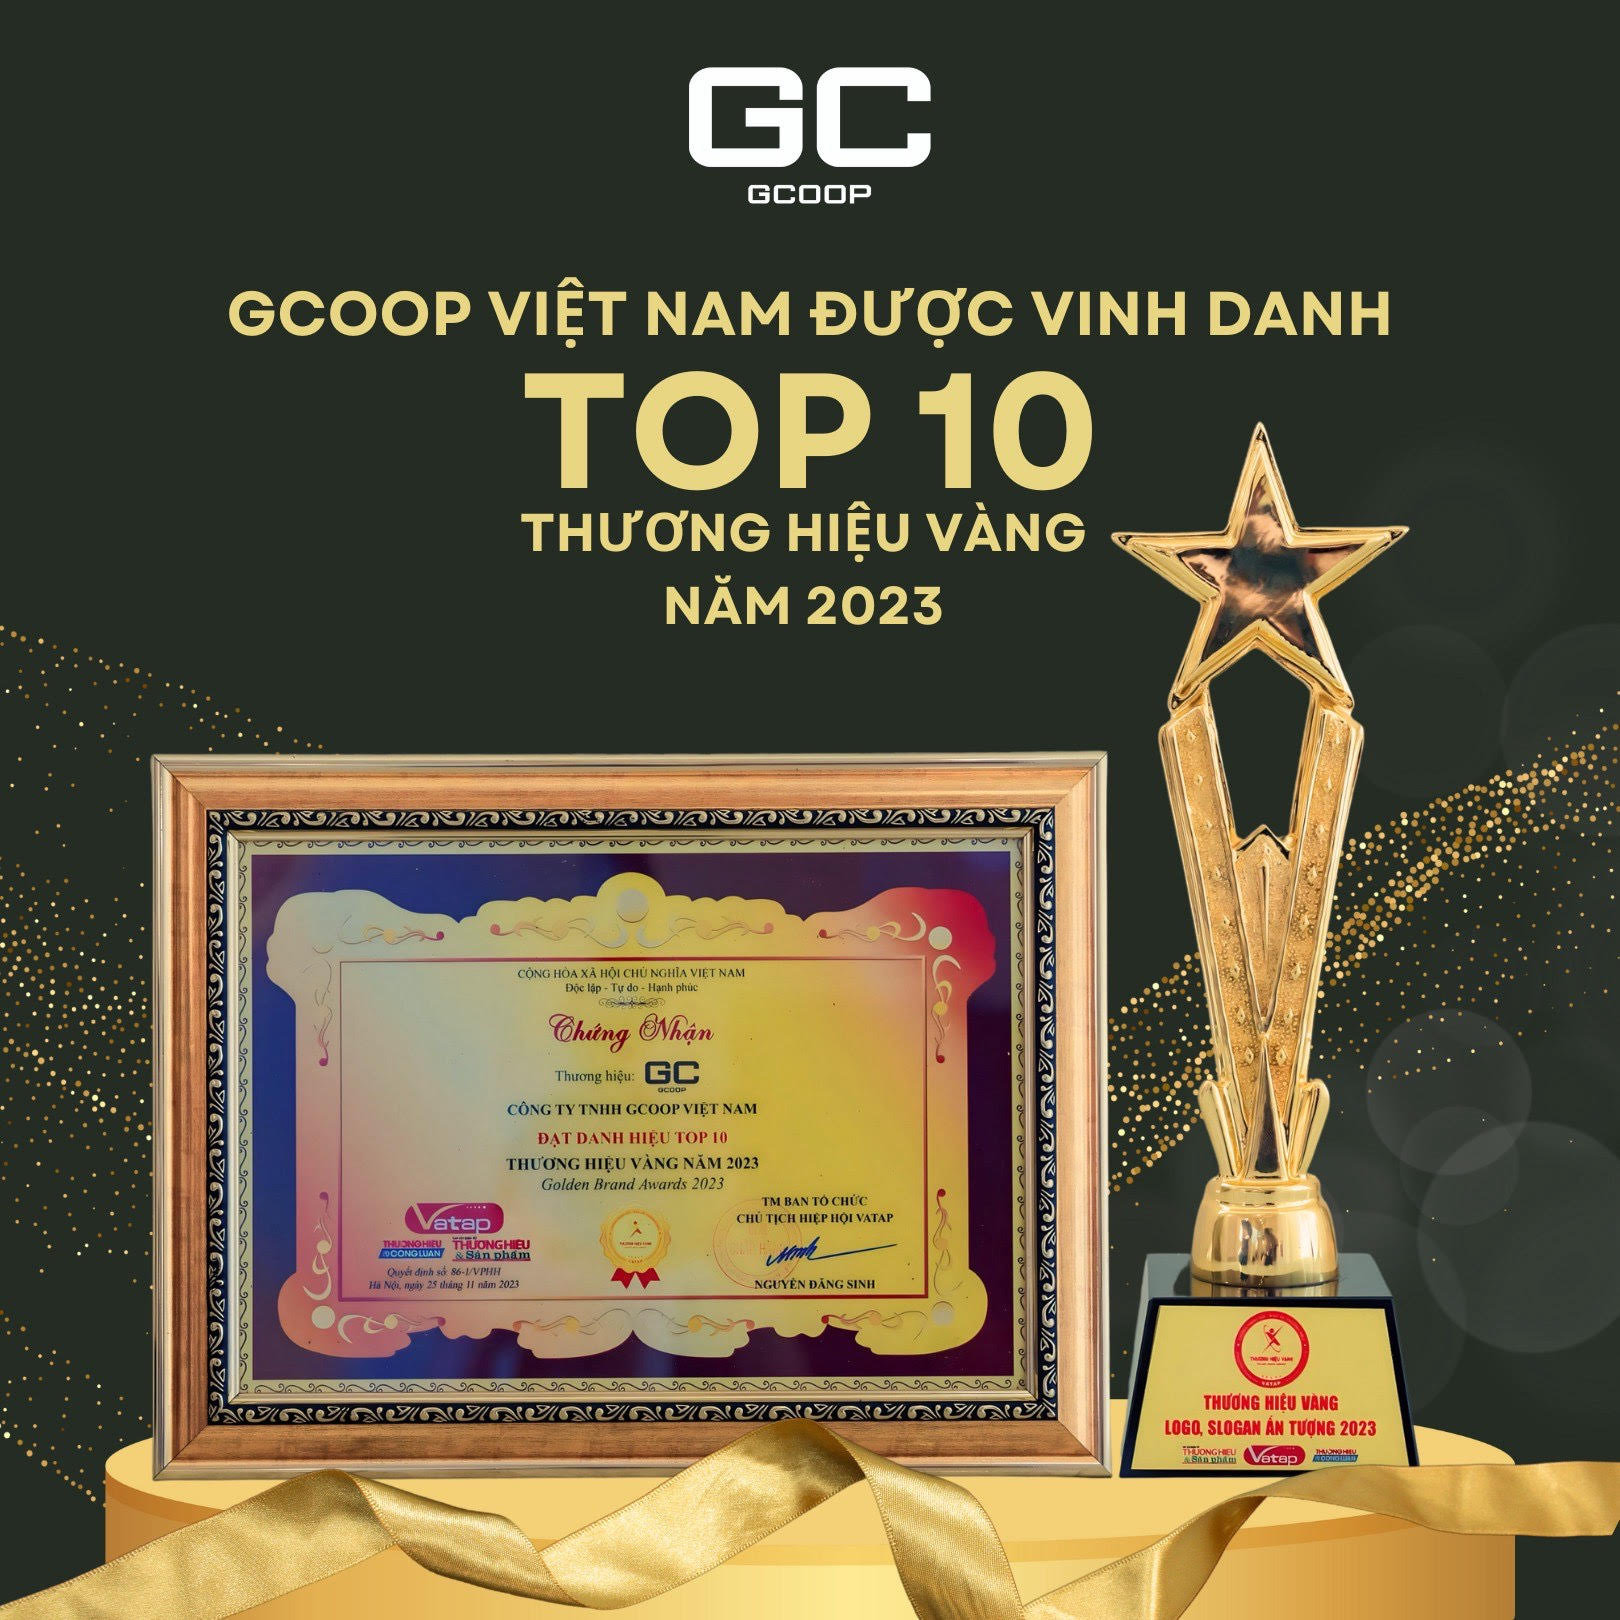 Gcoop Việt Nam được vinh danh “Top 10 Thương hiệu Vàng năm 2023”  - 2